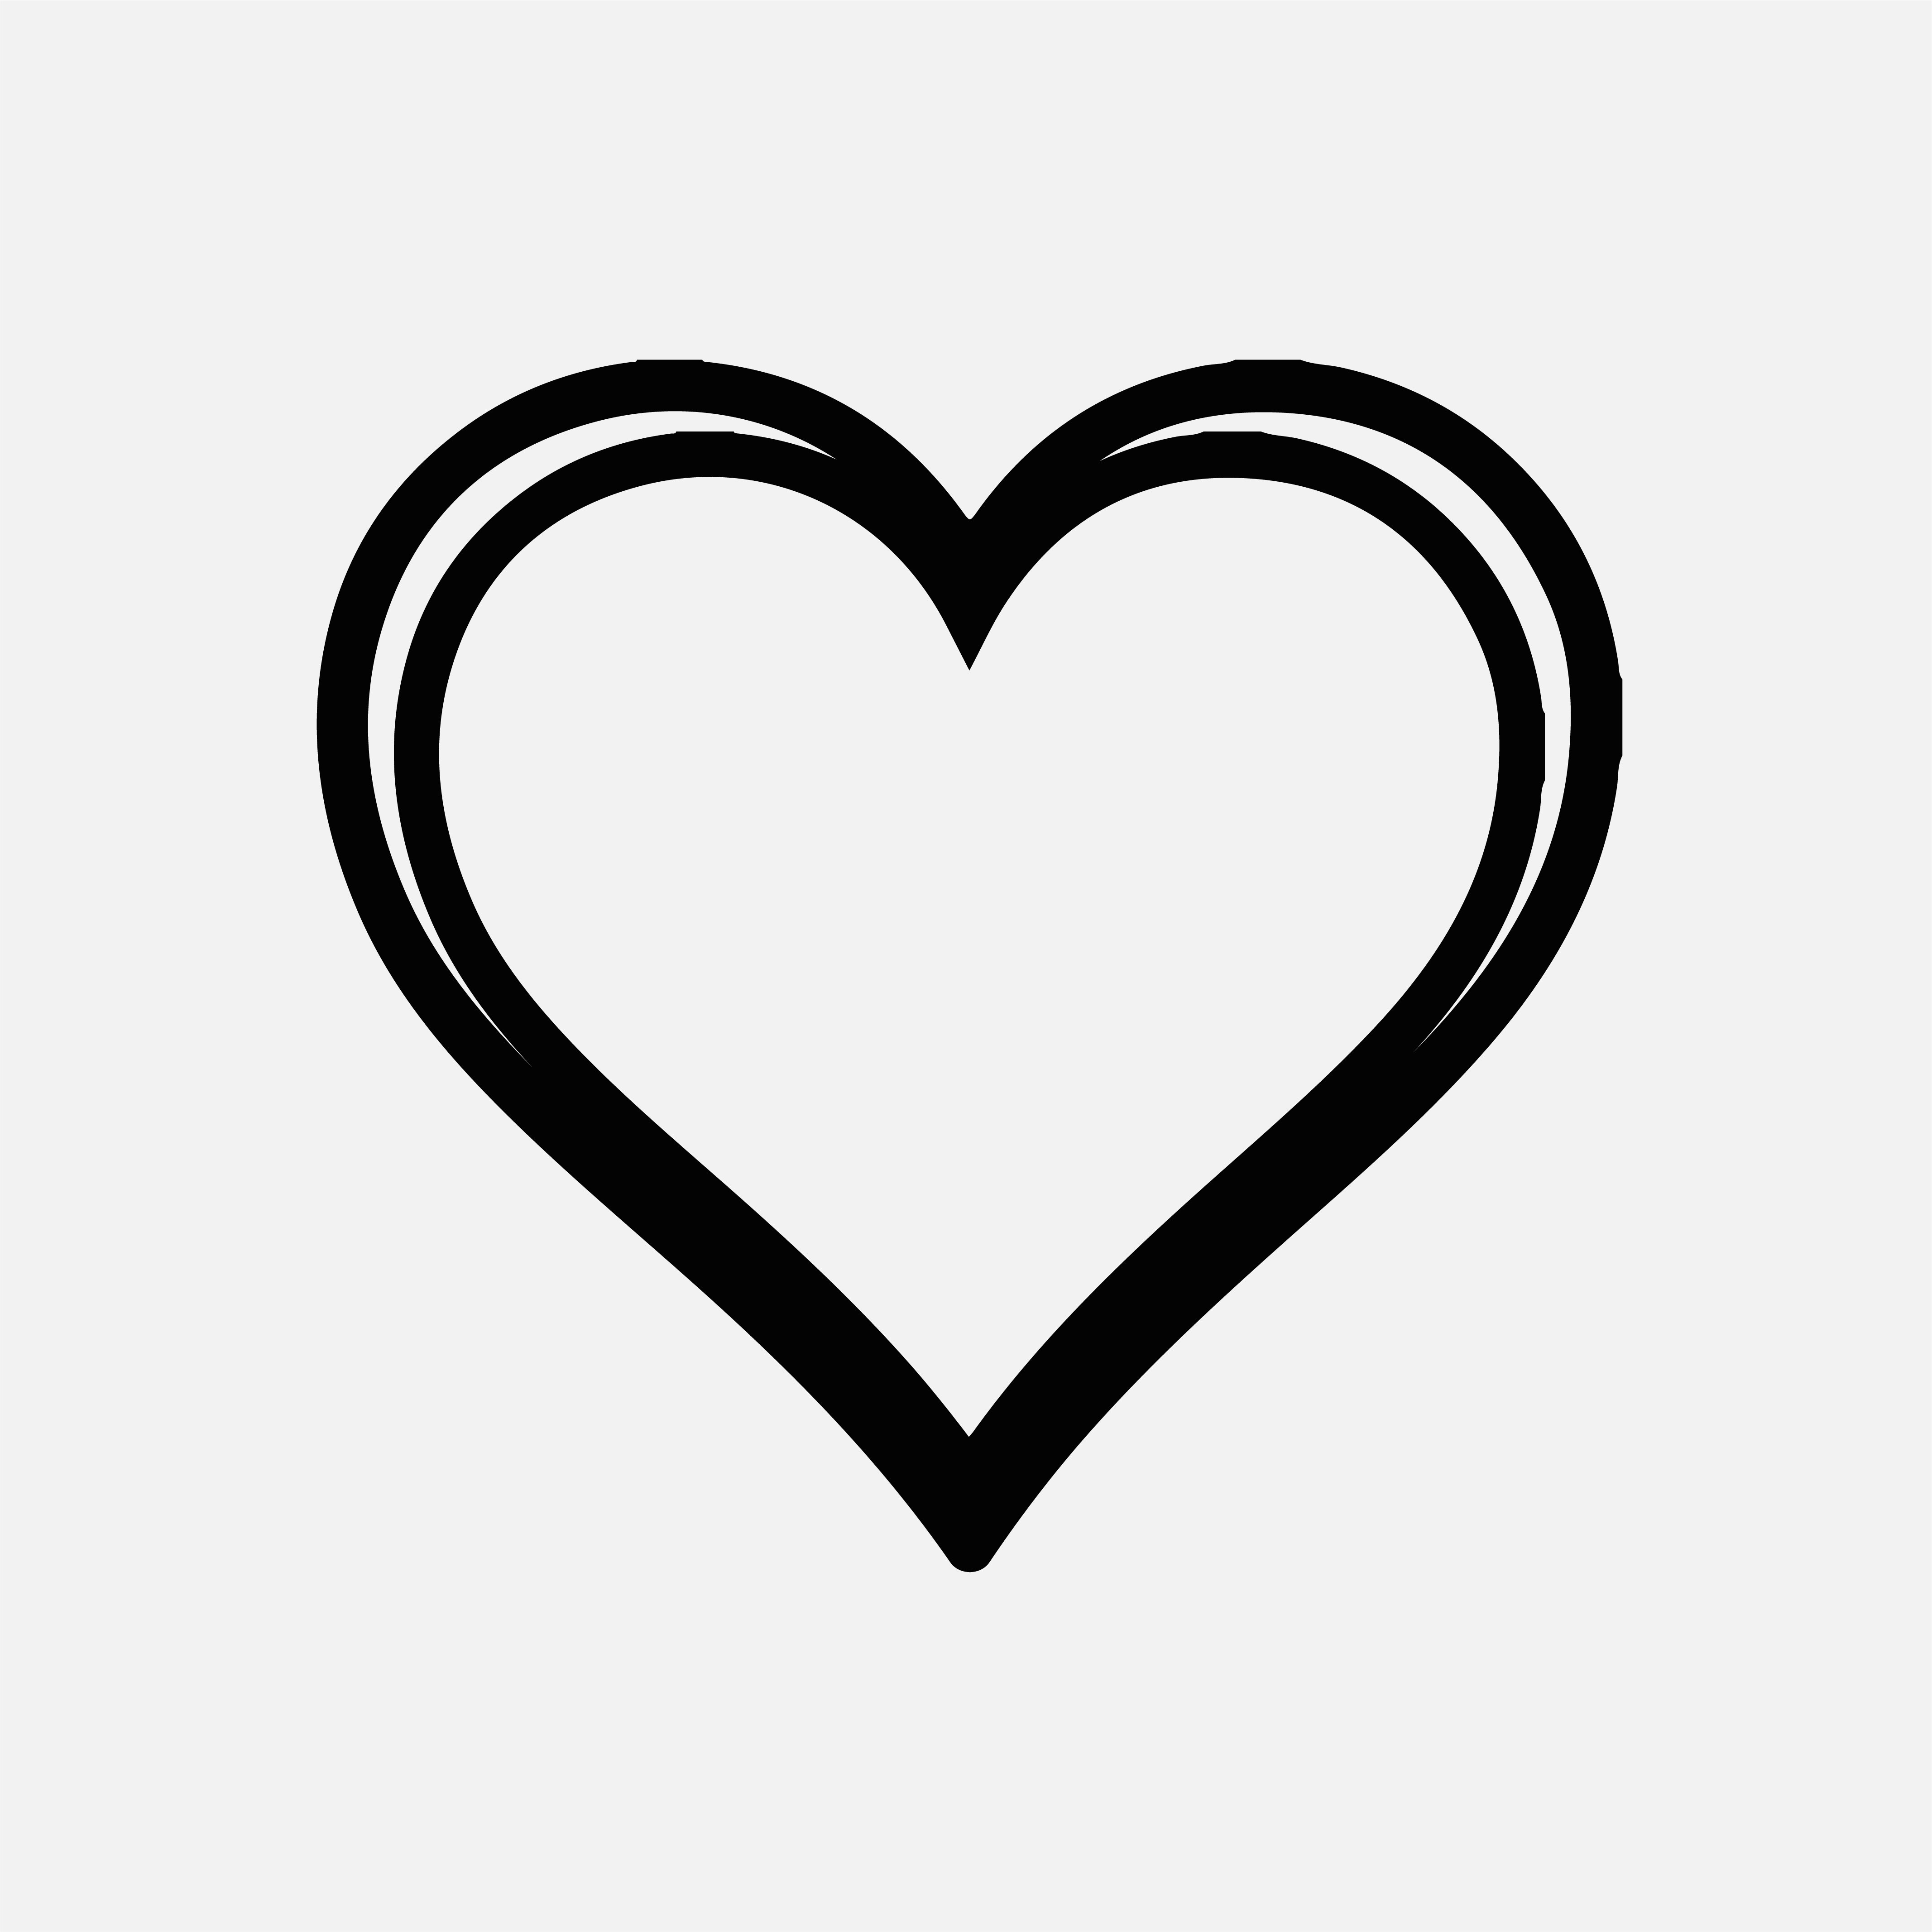 Free Heart Clipart Black And White Outline EPS, Illustrator, JPG, PNG